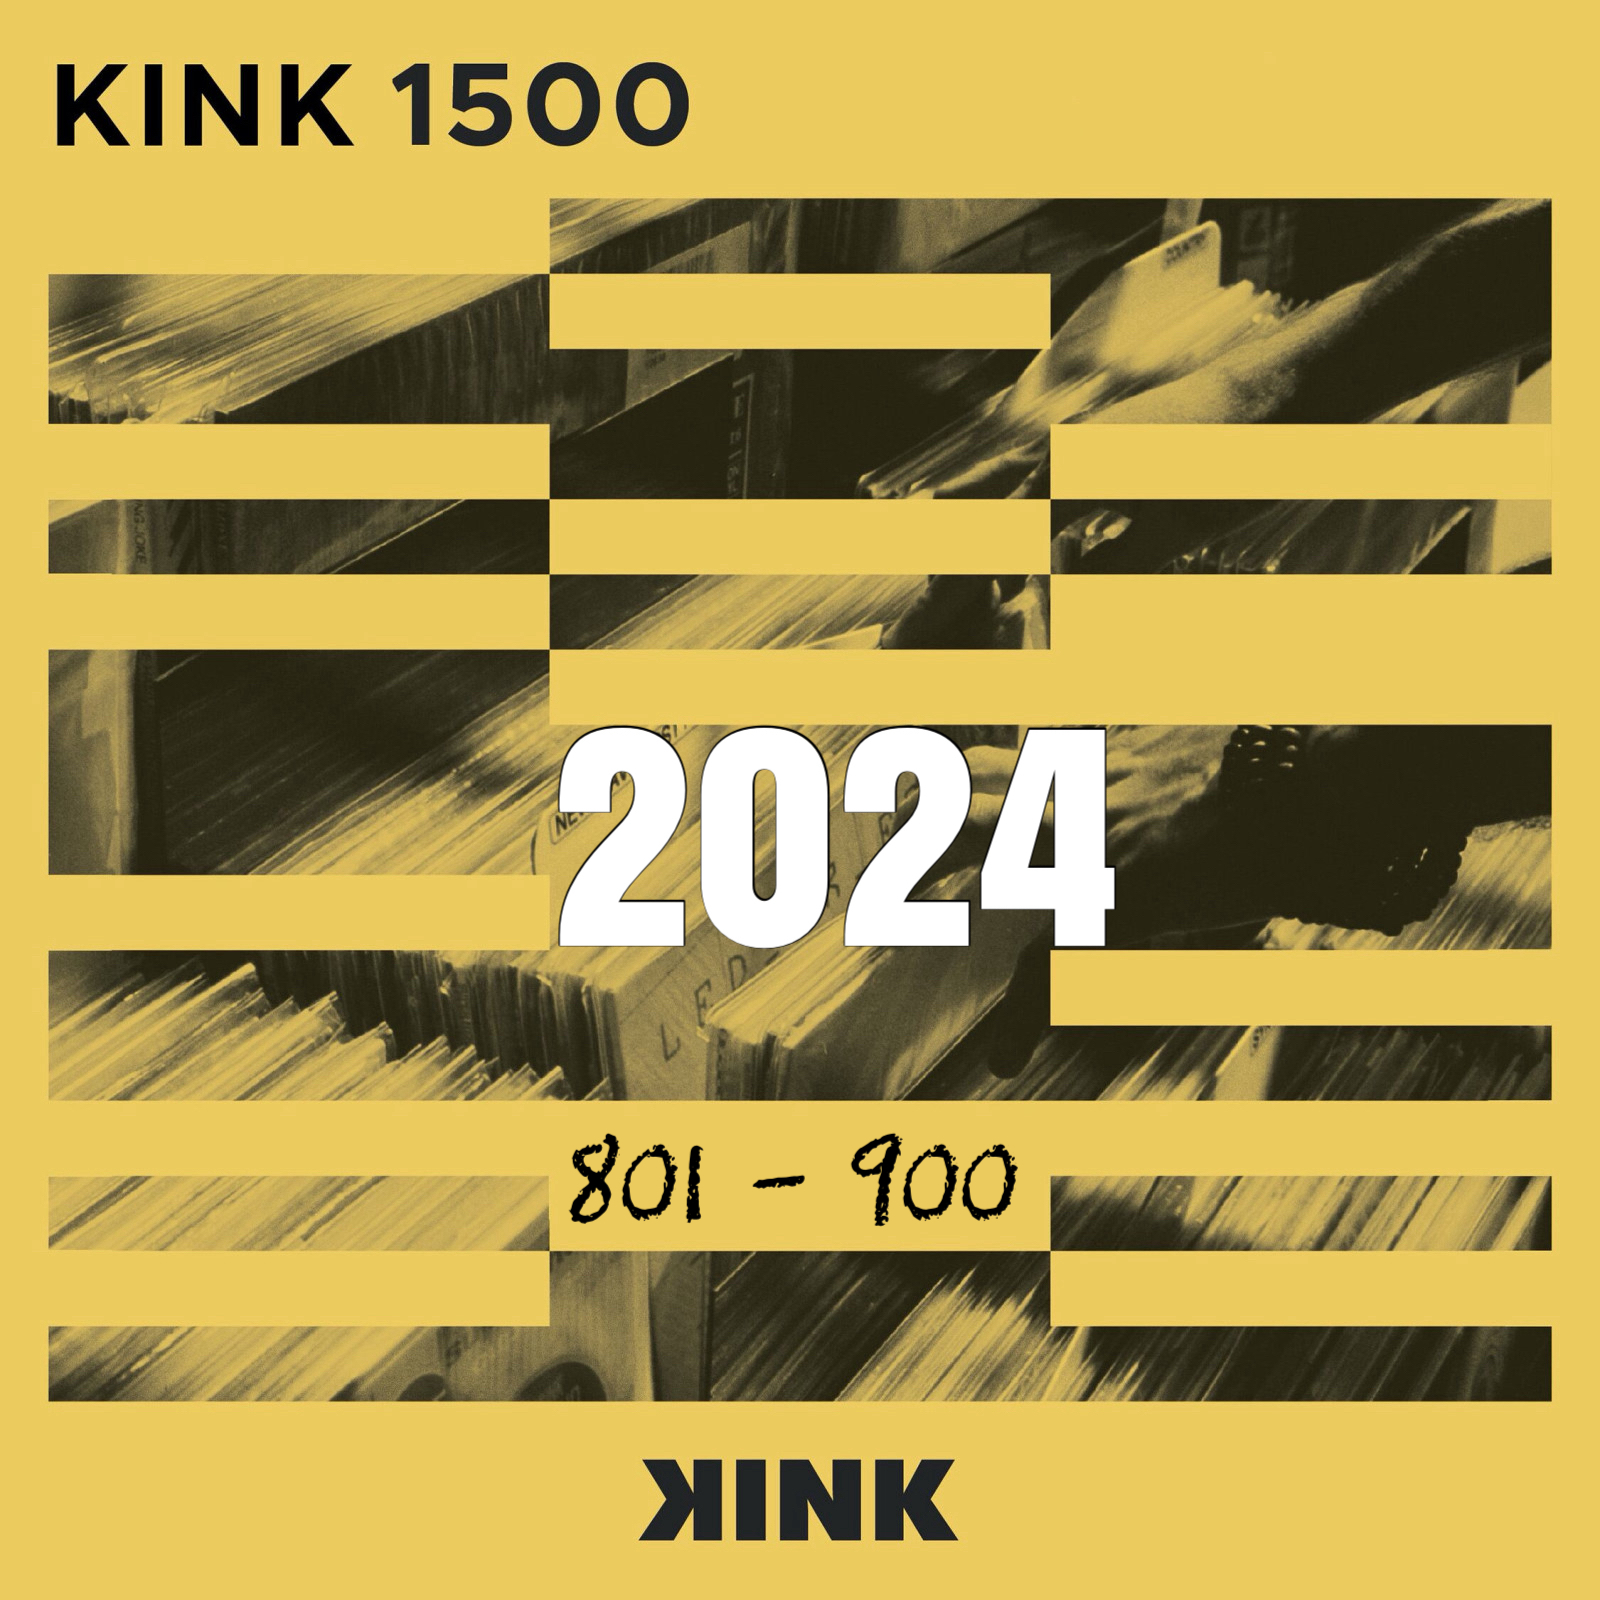 VA - Kink 1500 (2024) (0801- 0900)